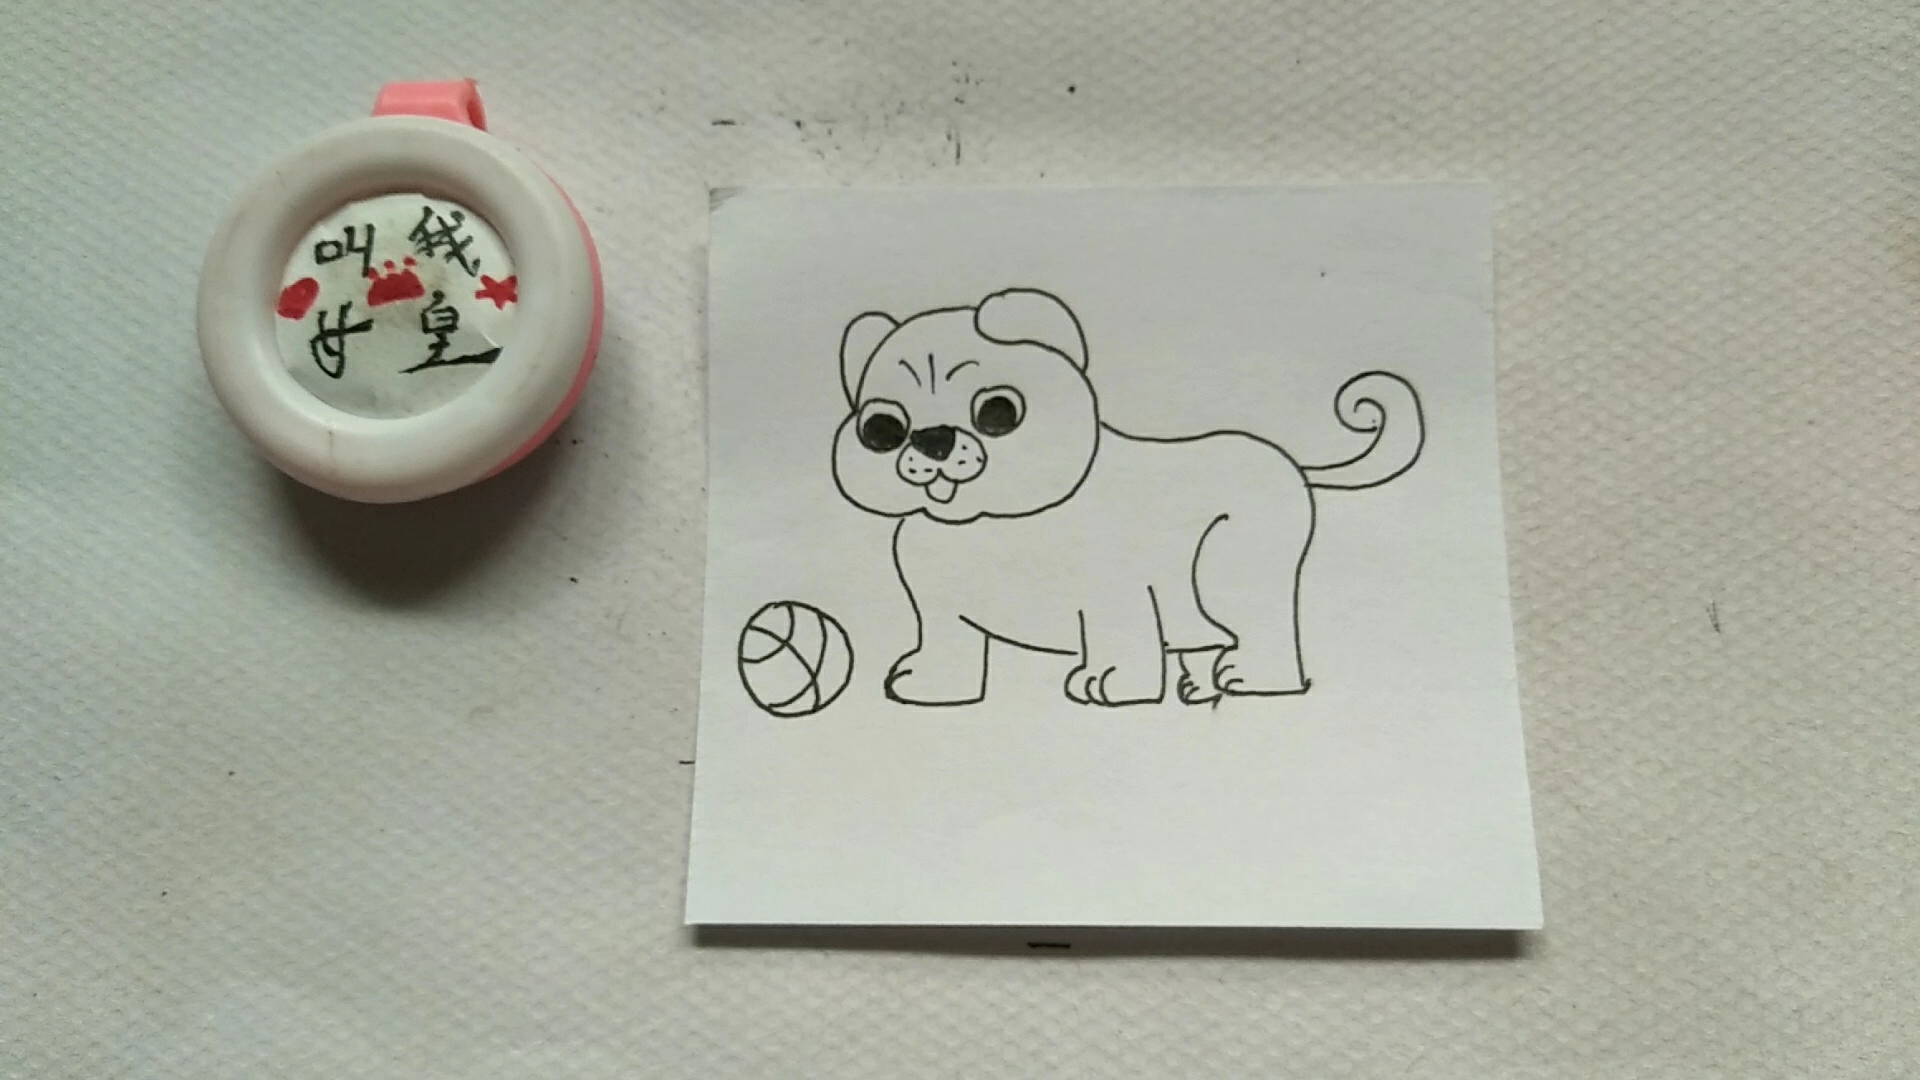 小狗玩球简笔画彩色图片